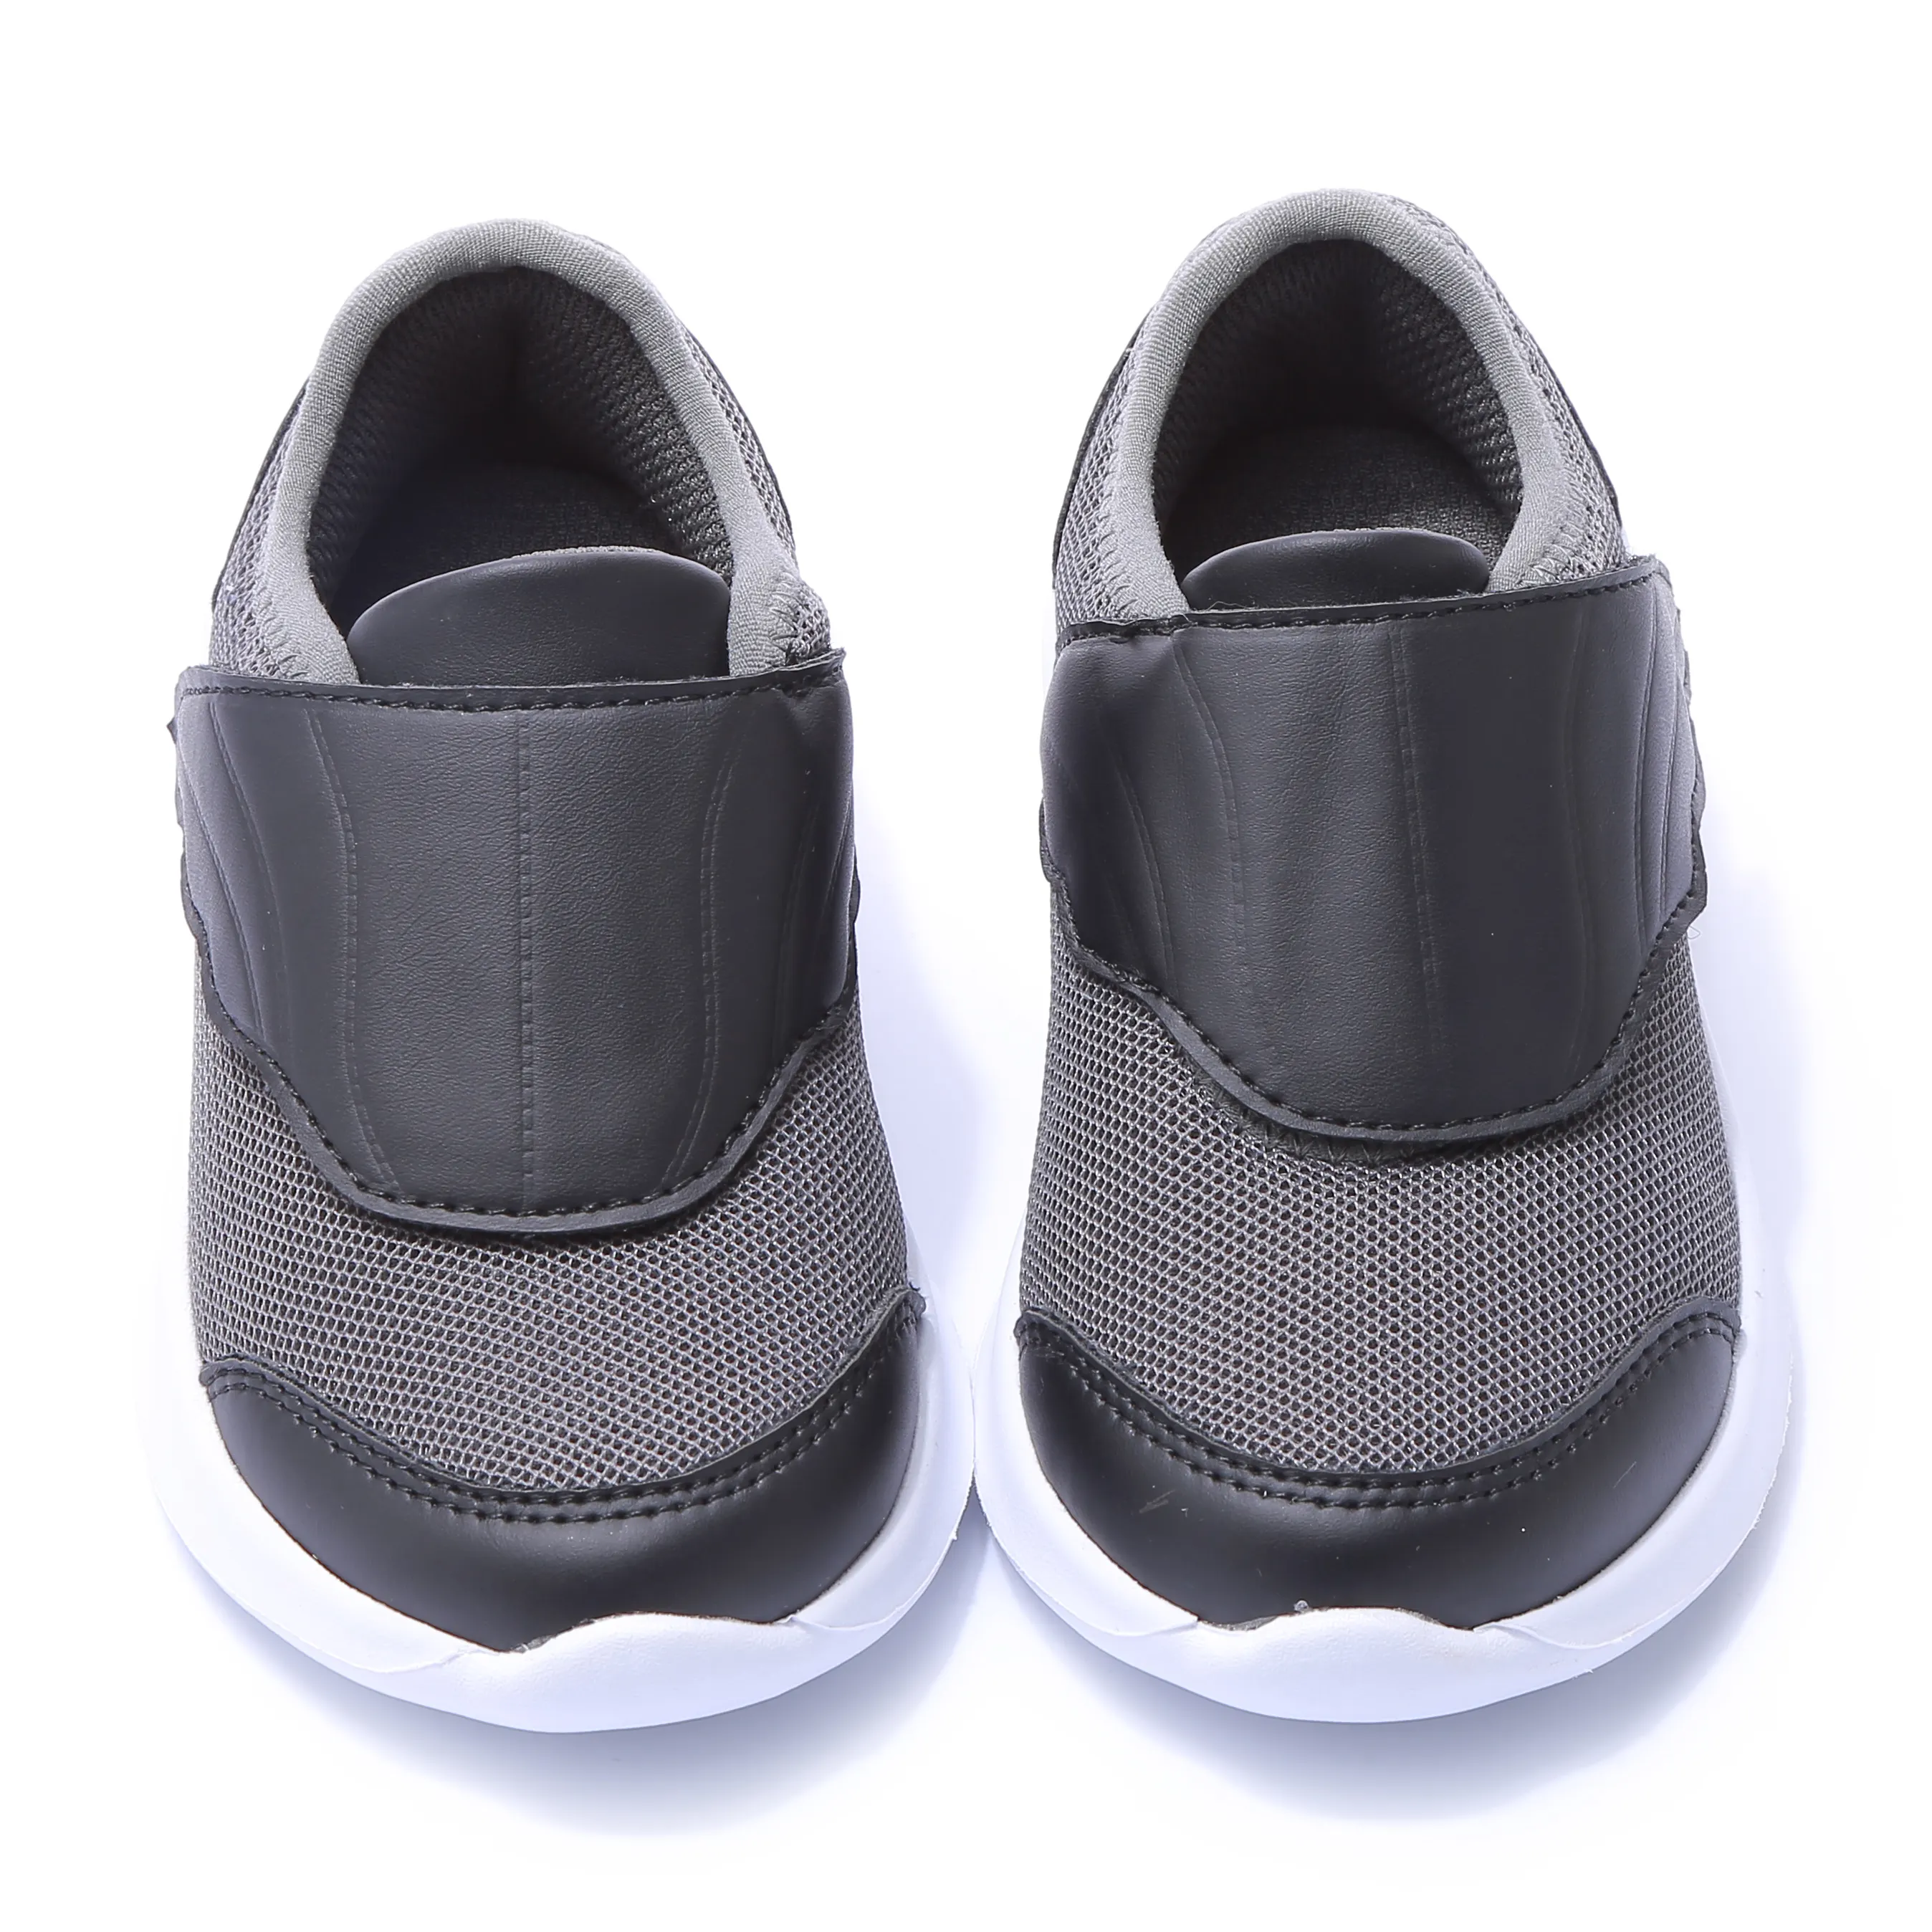 Children black sneakers shoes 2021 kids footwear